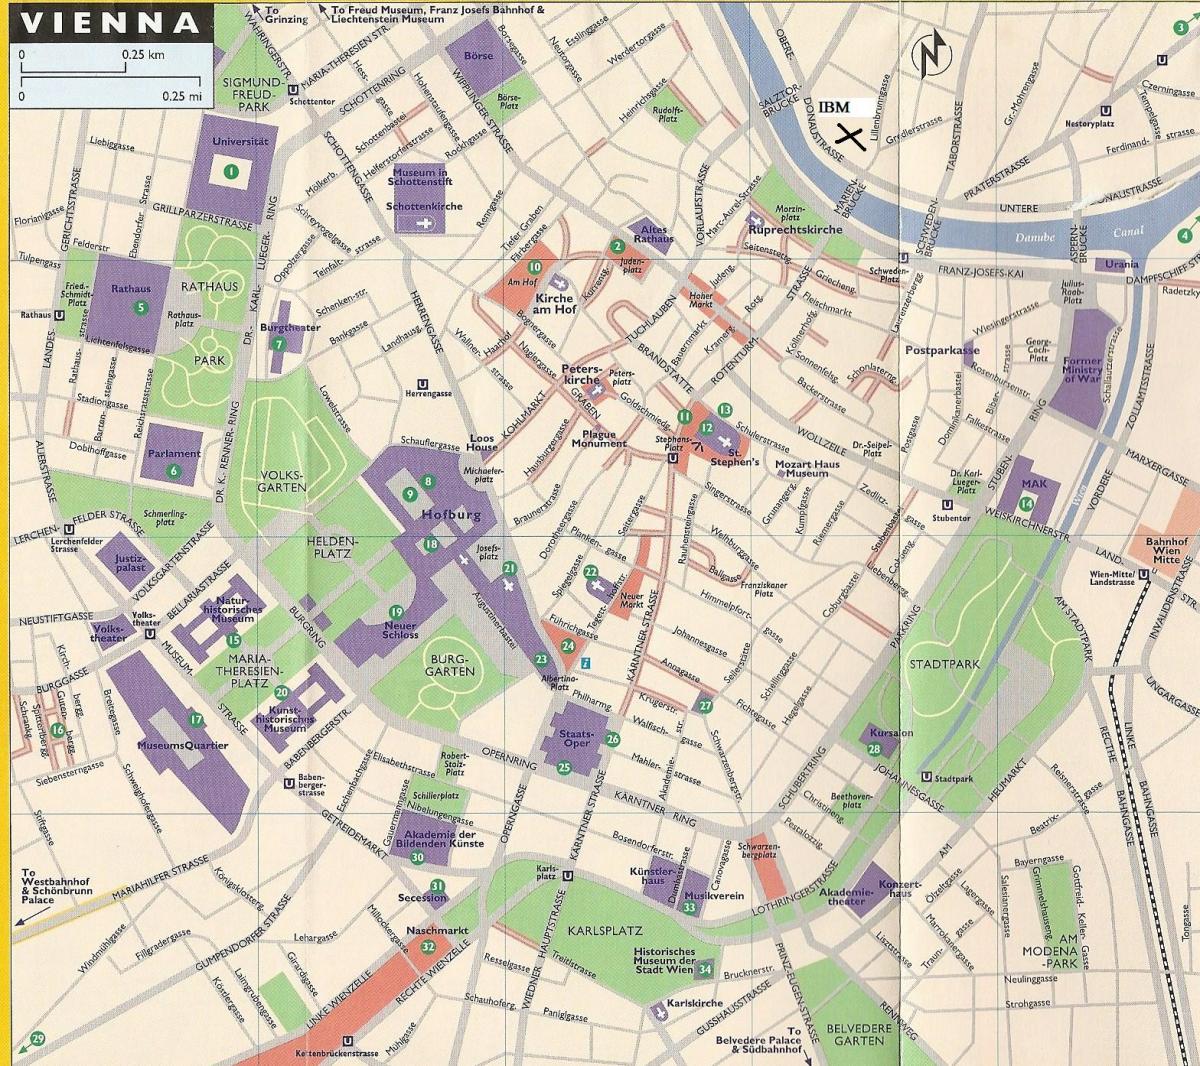 Mapa de tiendas por departamento en Viena 